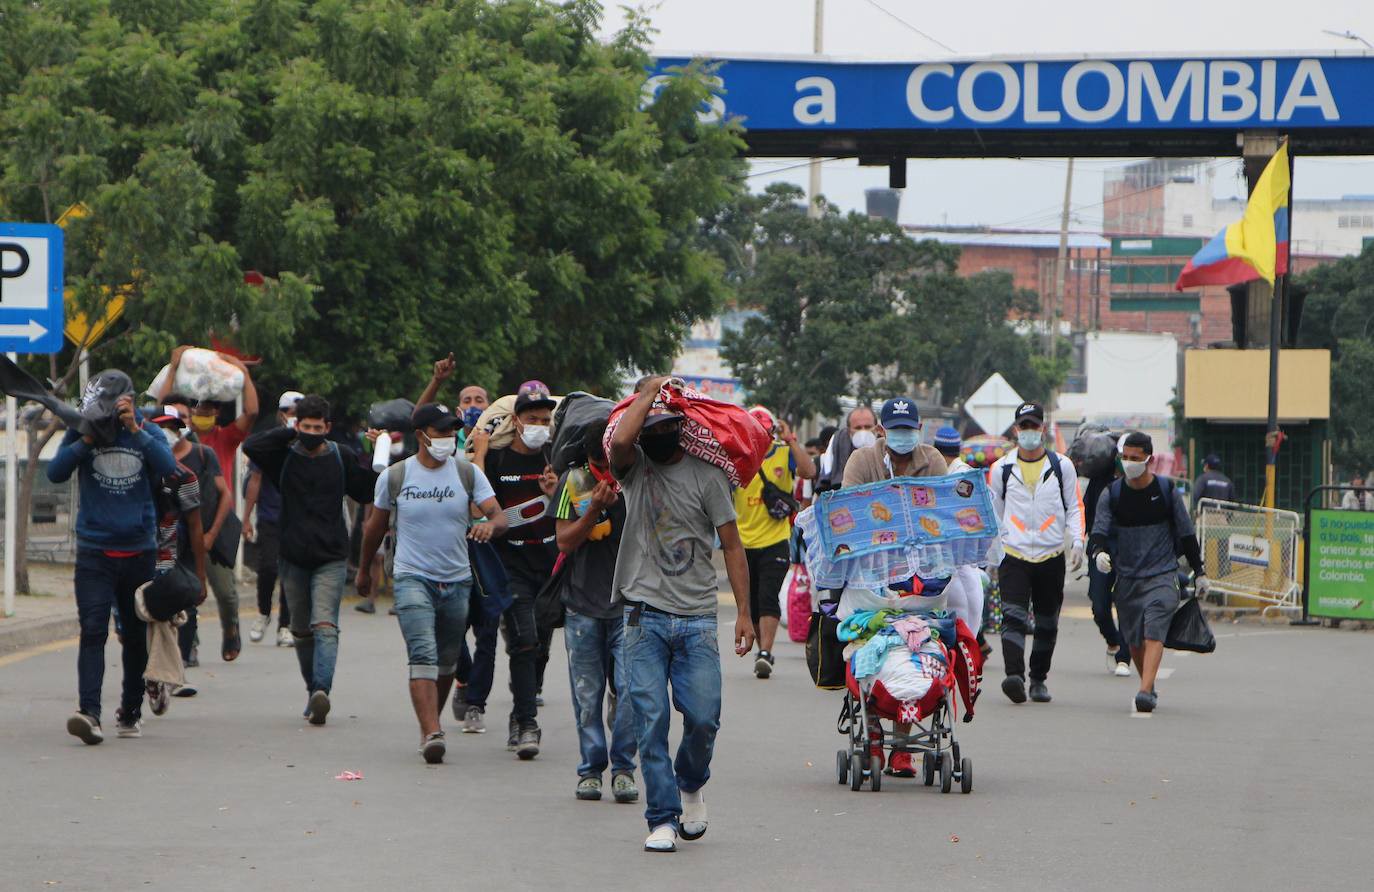 Presidente Iván Duque regularizará a 1 millón de venezolanos en Colombia | Diario 2001